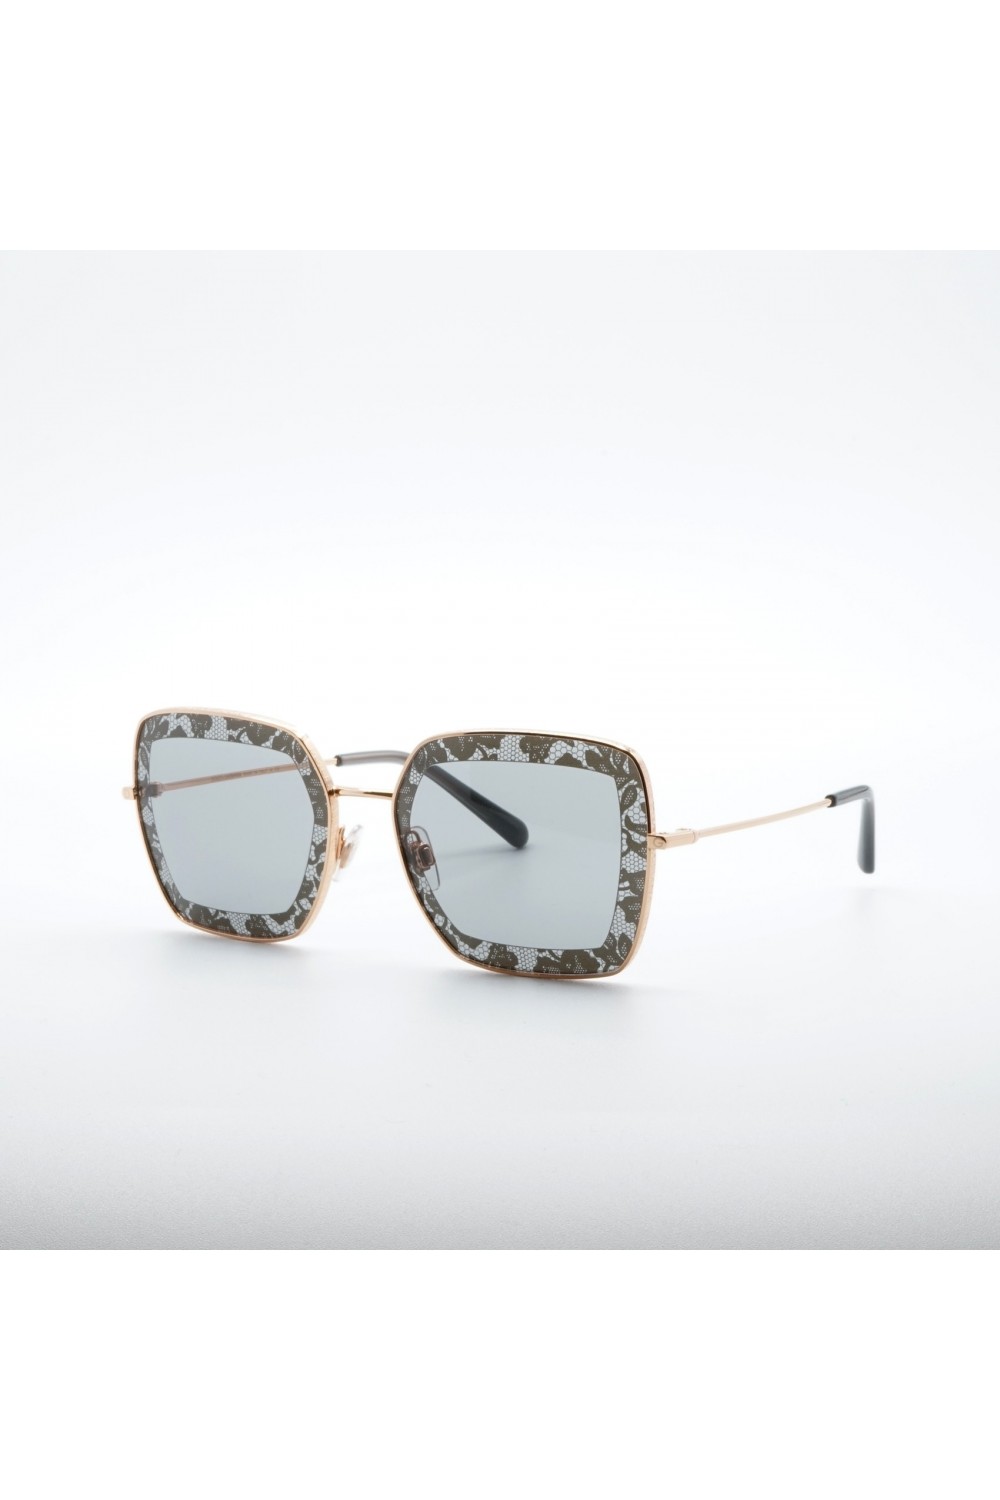 Dolce&Gabbana - Occhiali da sole in metallo squadrati per donna oro - DG2242